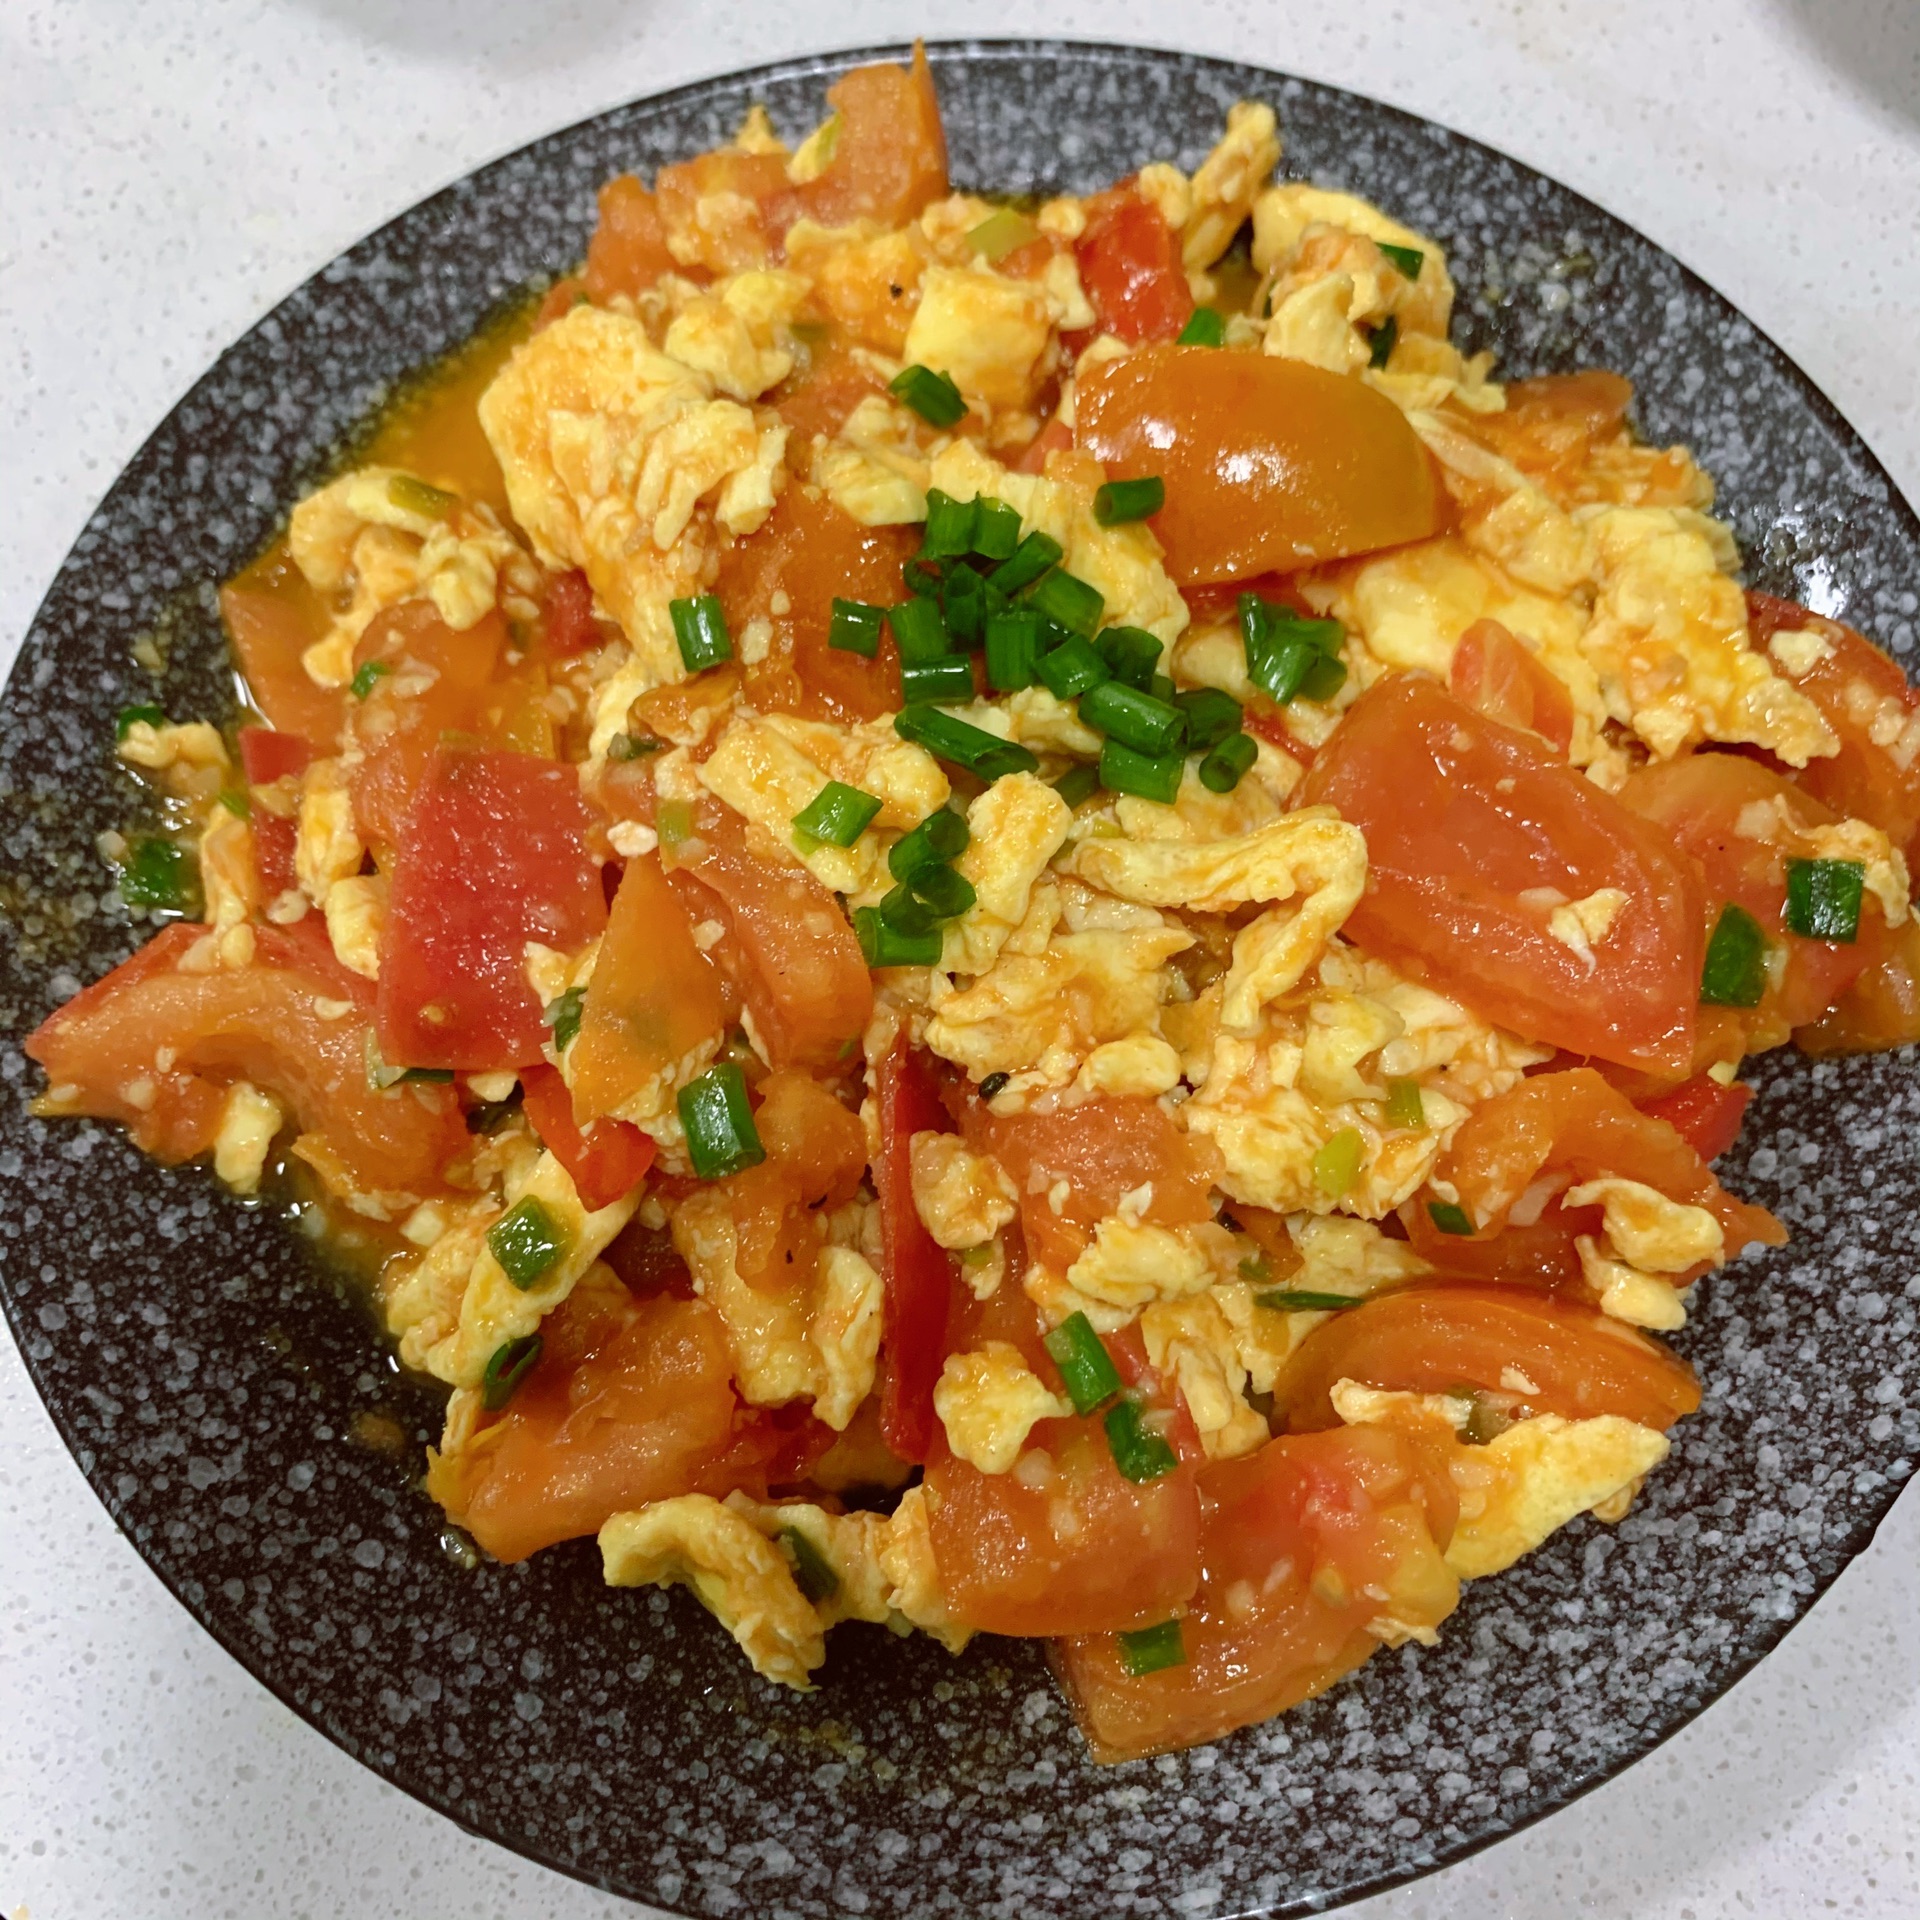 西红柿炒鸡蛋,西红柿炒鸡蛋的家常做法 - 美食杰西红柿炒鸡蛋做法大全